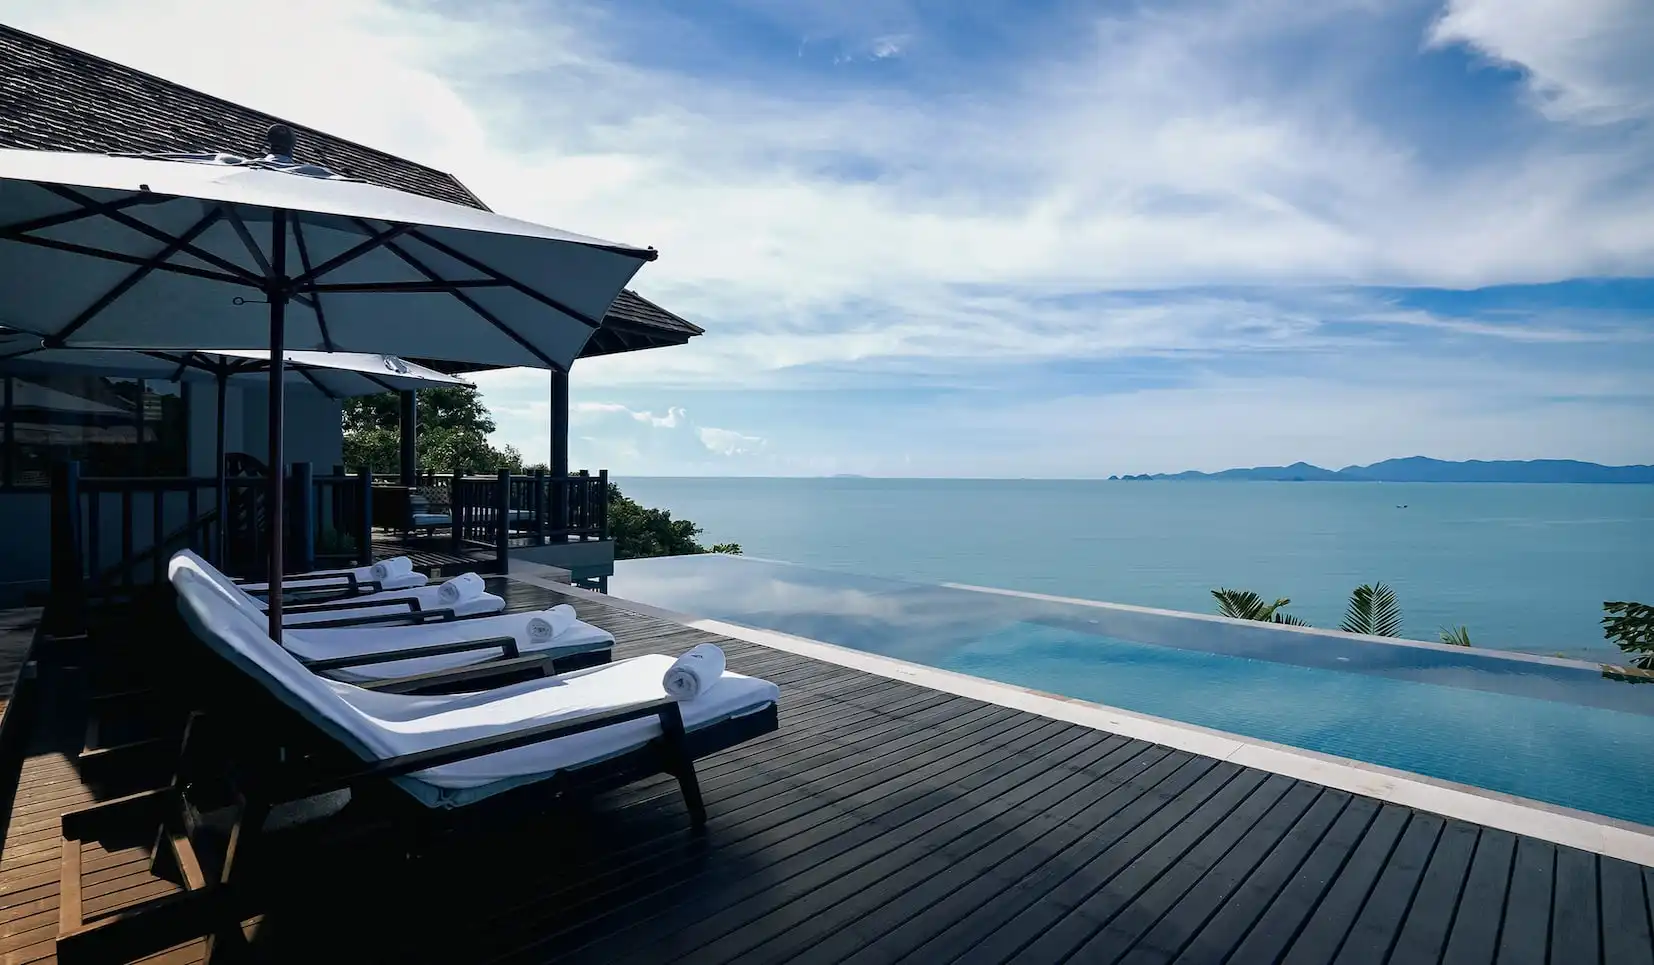 CS086 Luxurious 4 Bedrooms Villa in 5 Star Resort View 025